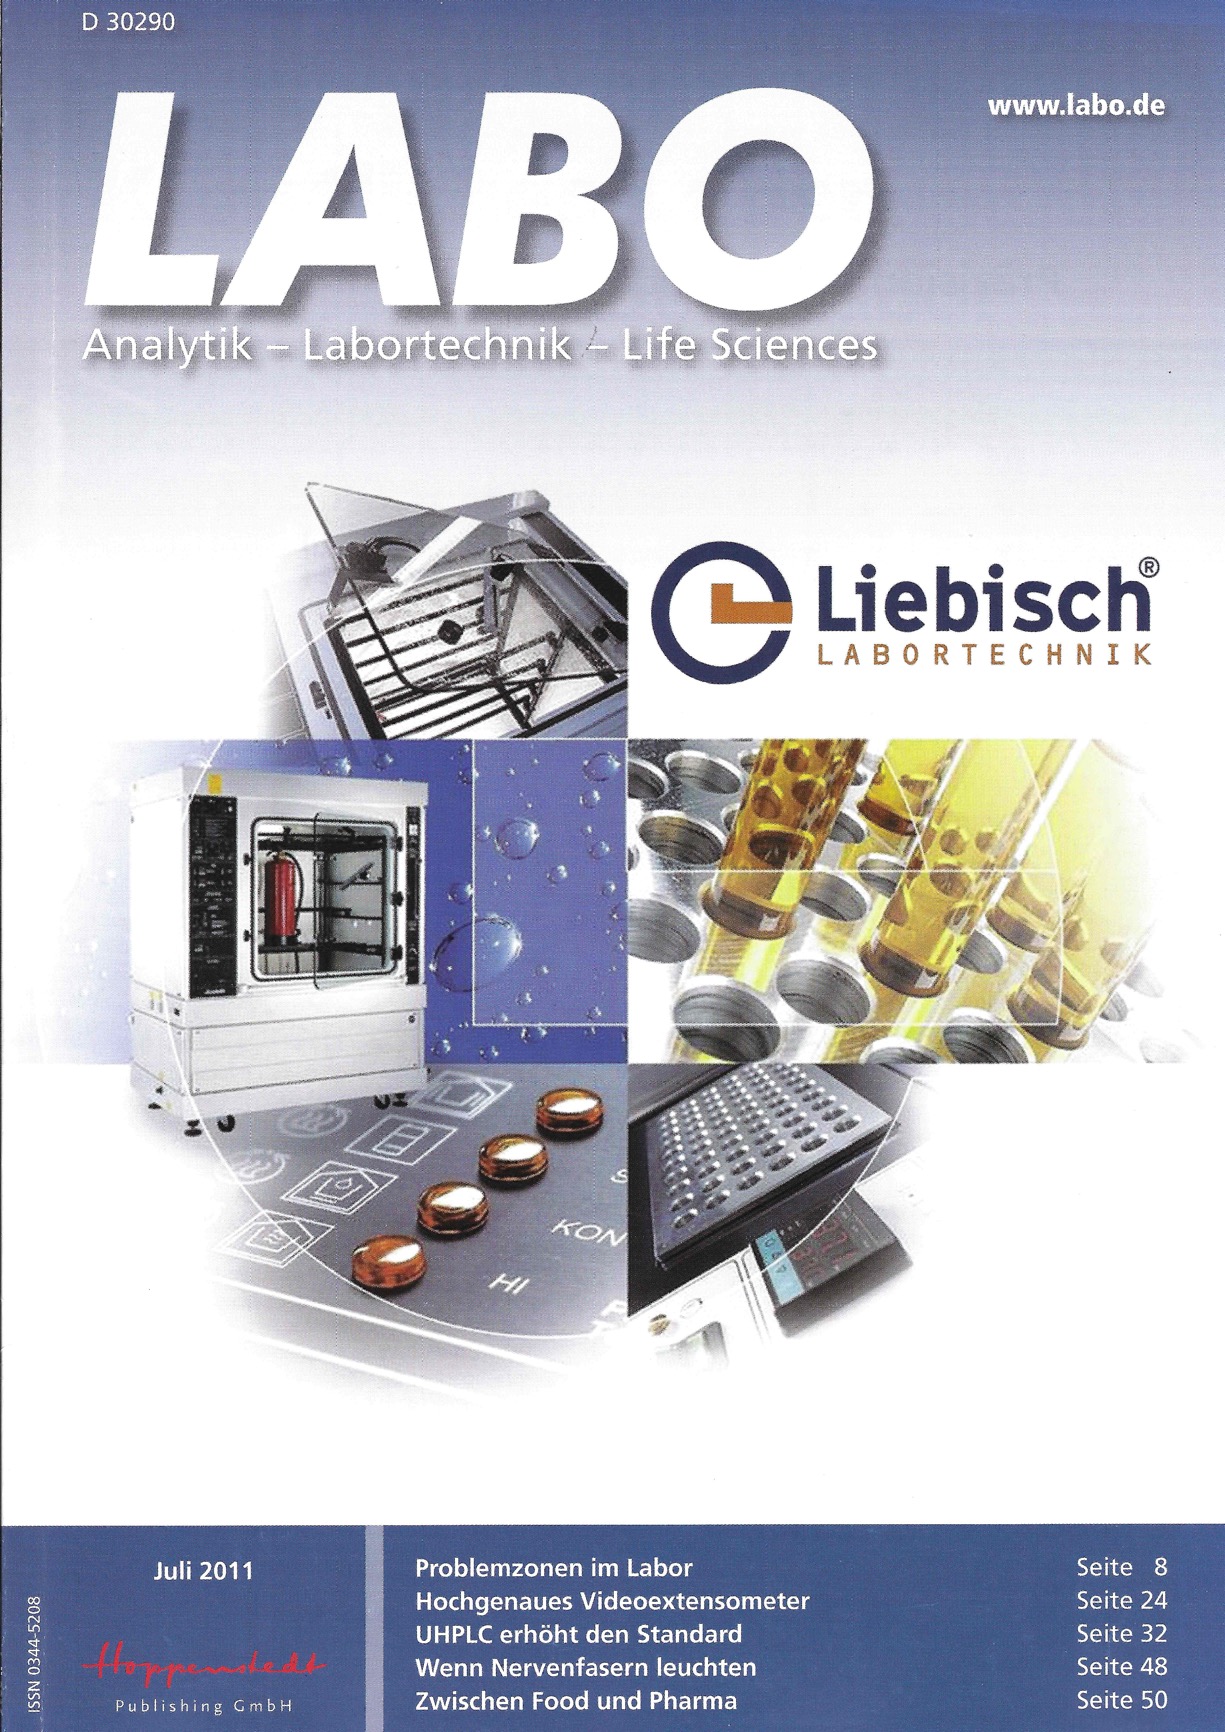 Labo Magazin - Ausgabe Juli 2011 - Liebisch auf dem Titelblatt